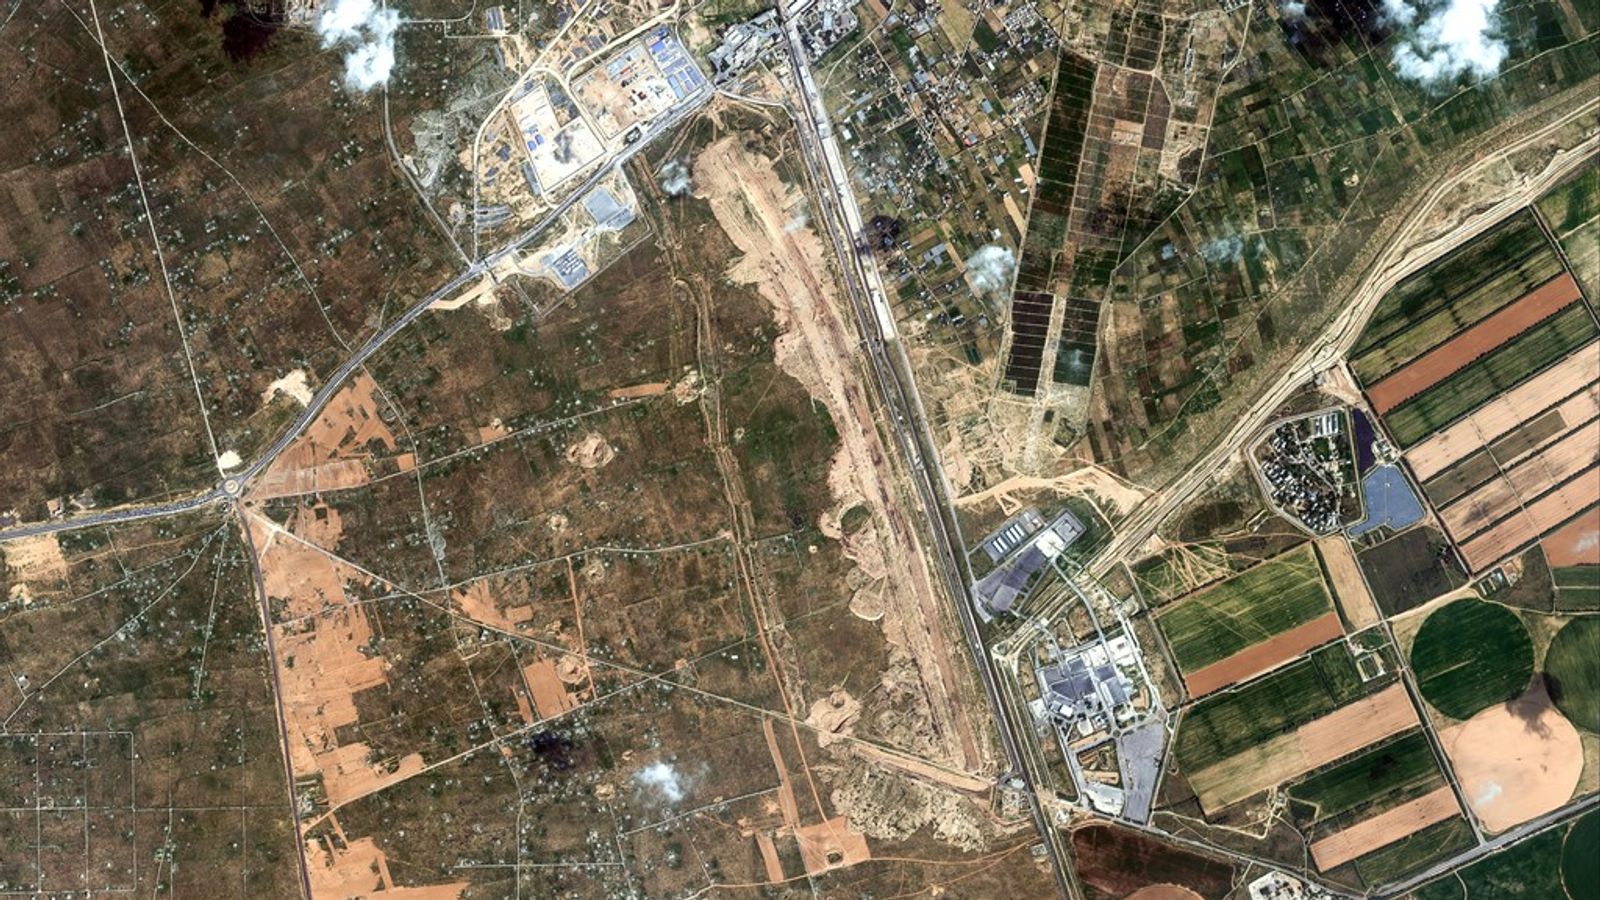 Последние новости Ближнего Востока: Египет строит стену и расчищает территорию на границе с сектором Газа, показывают спутниковые снимки и кадры |  Новости мира